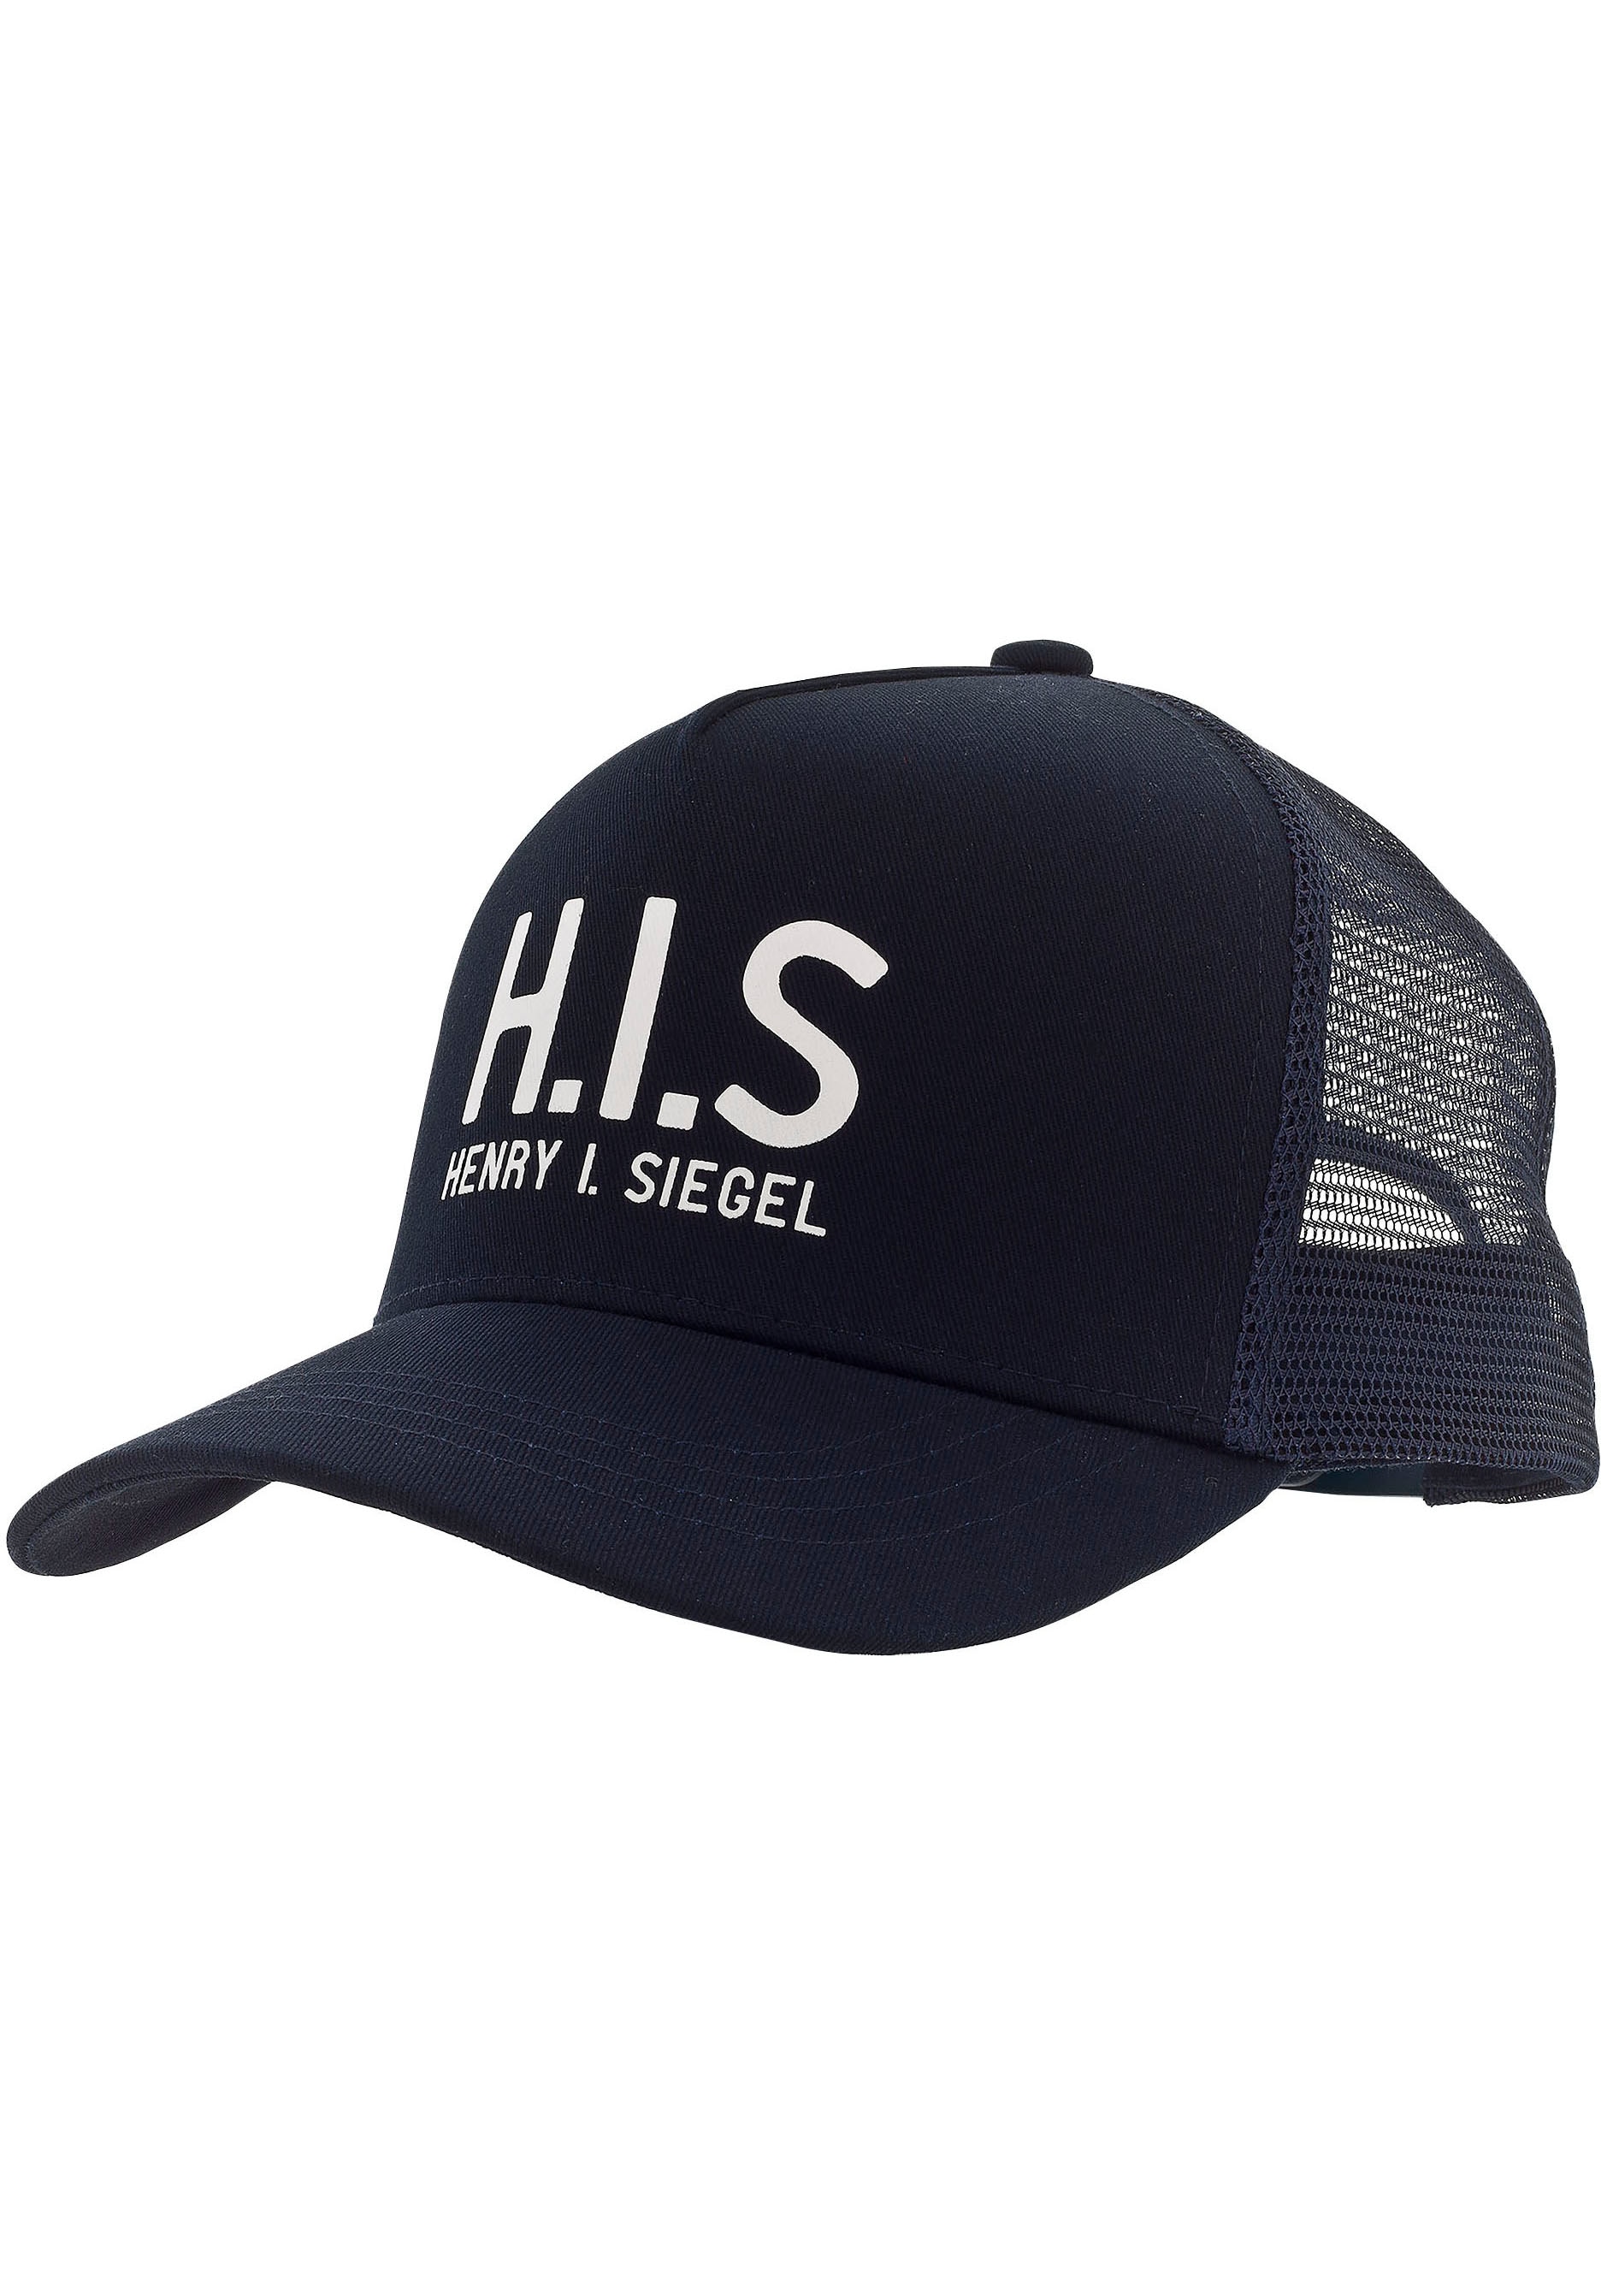 H.I.S Baseball Cap, Mesh-Cap mit H.I.S.-Print